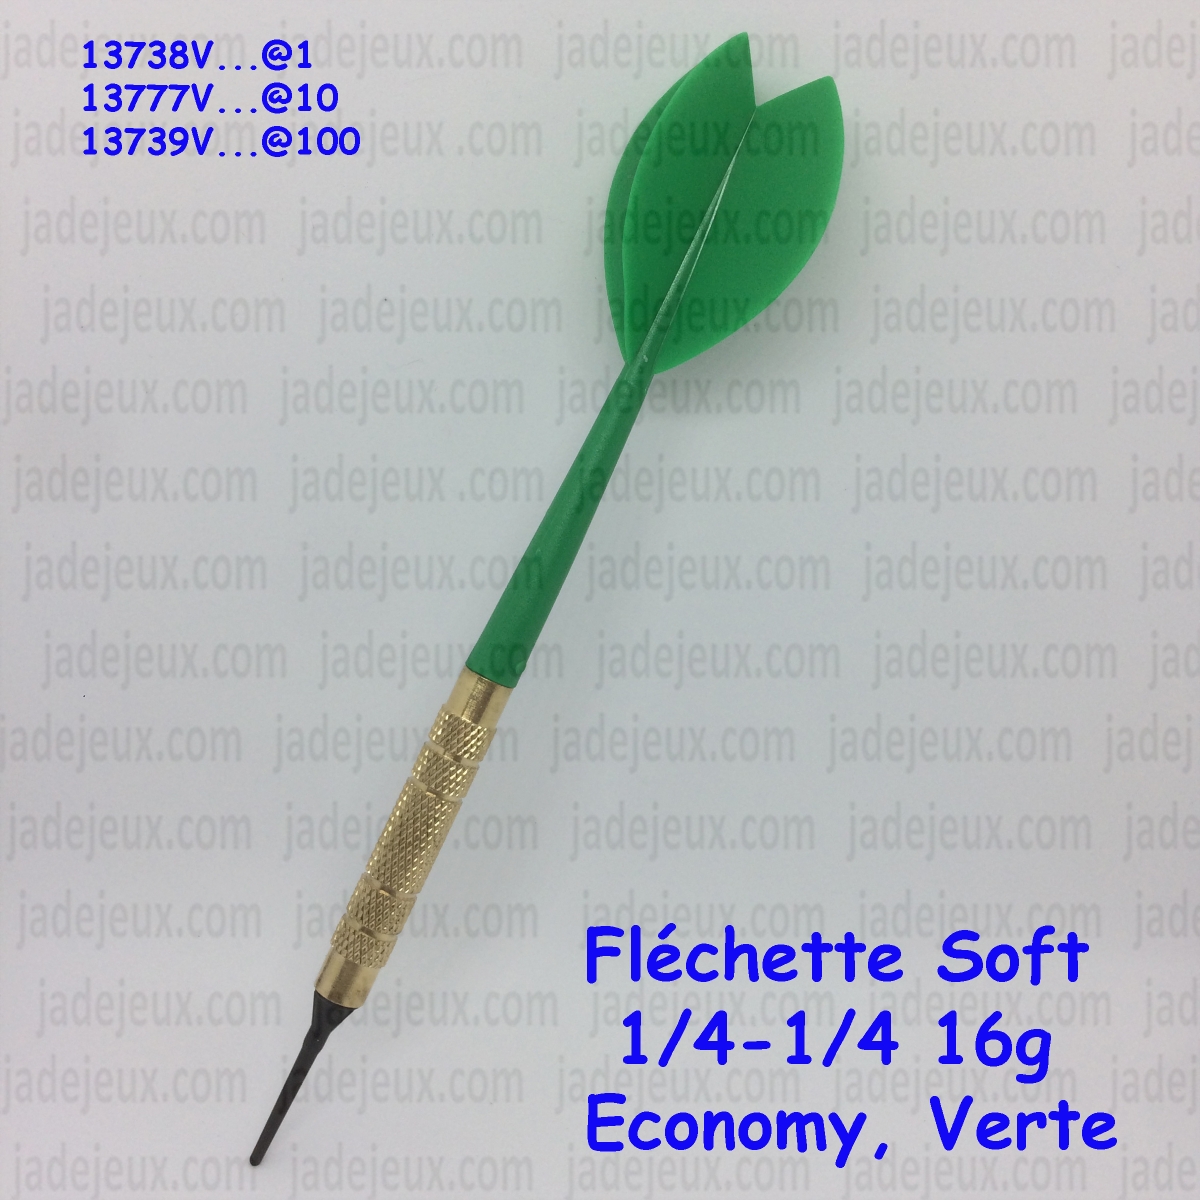 Fléchette Soft 1/4-1/4 16g Economy - Jade Jeux